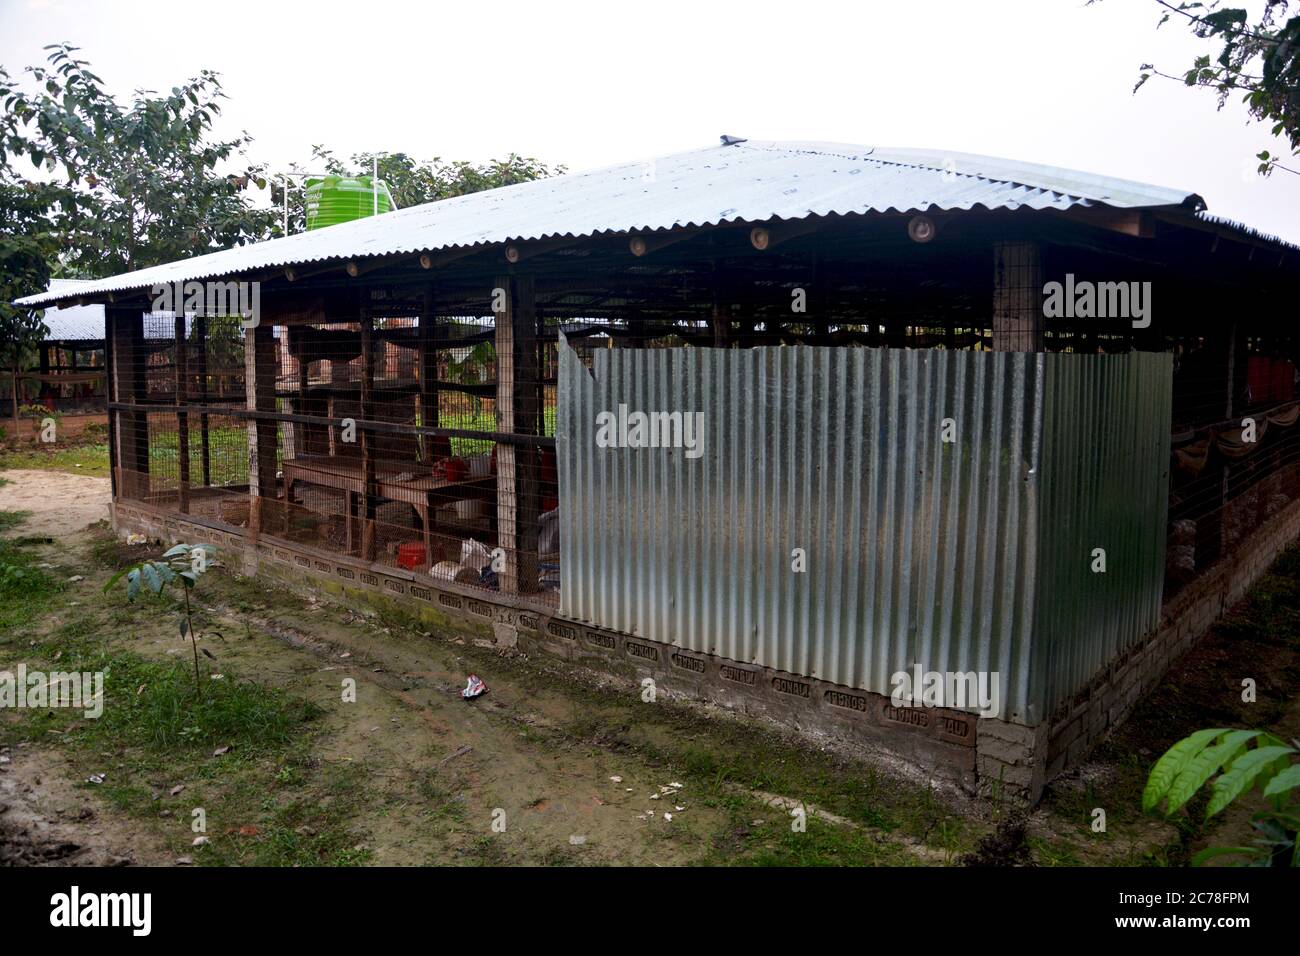 Un cobertizo de granja avícola de bajo costo hecho de hojas de estaño en la India, Bengala Occidental, enfoque selectivo Foto de stock